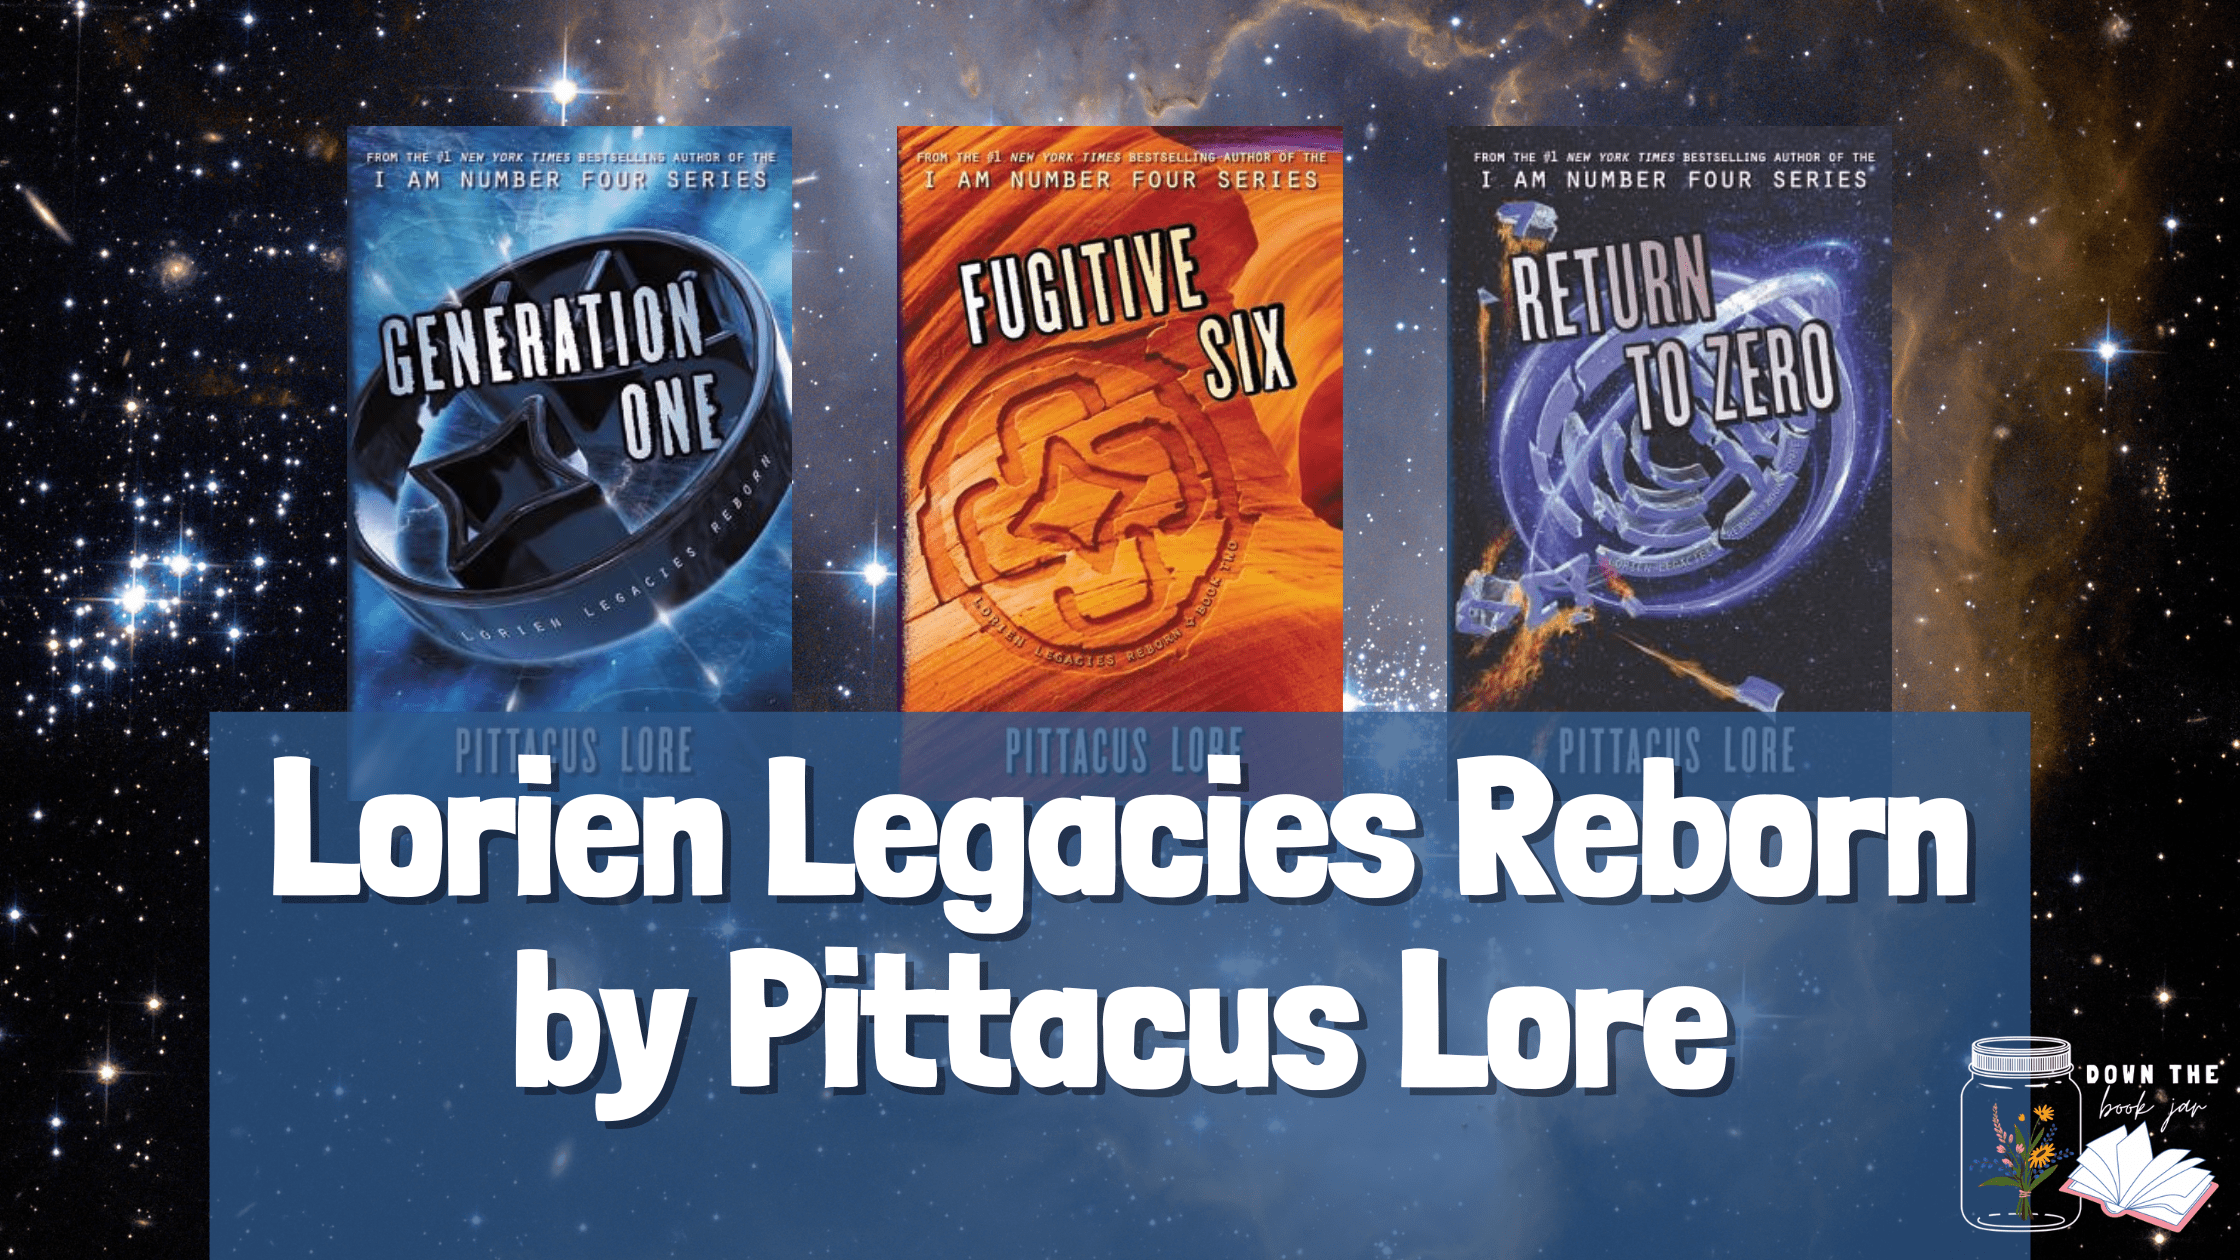 Lorien Legacies Reborn Series by Pittacus Lore